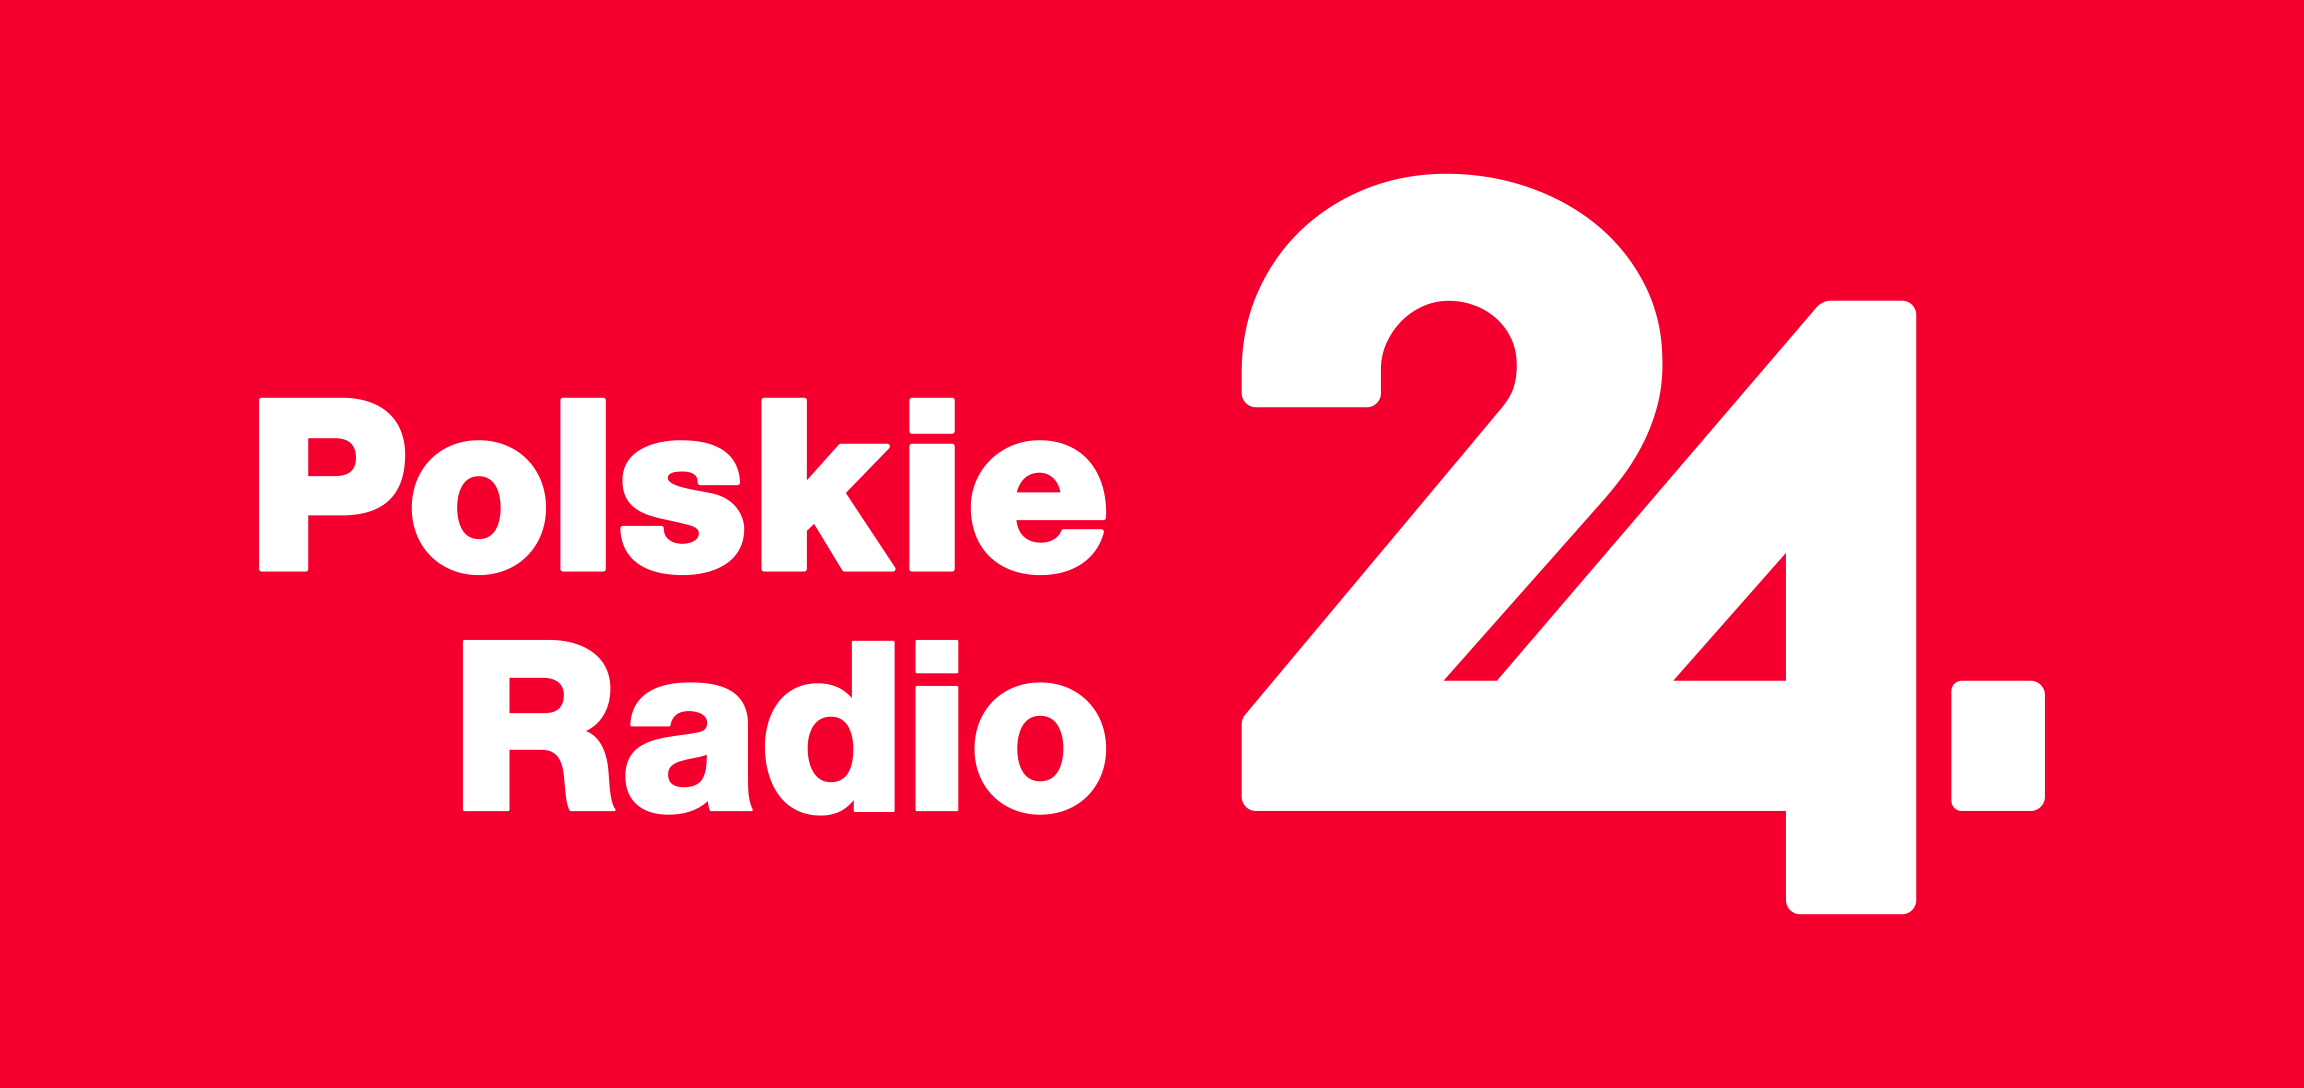 Na czerwonym tle biały napis Polskie Radio 24.